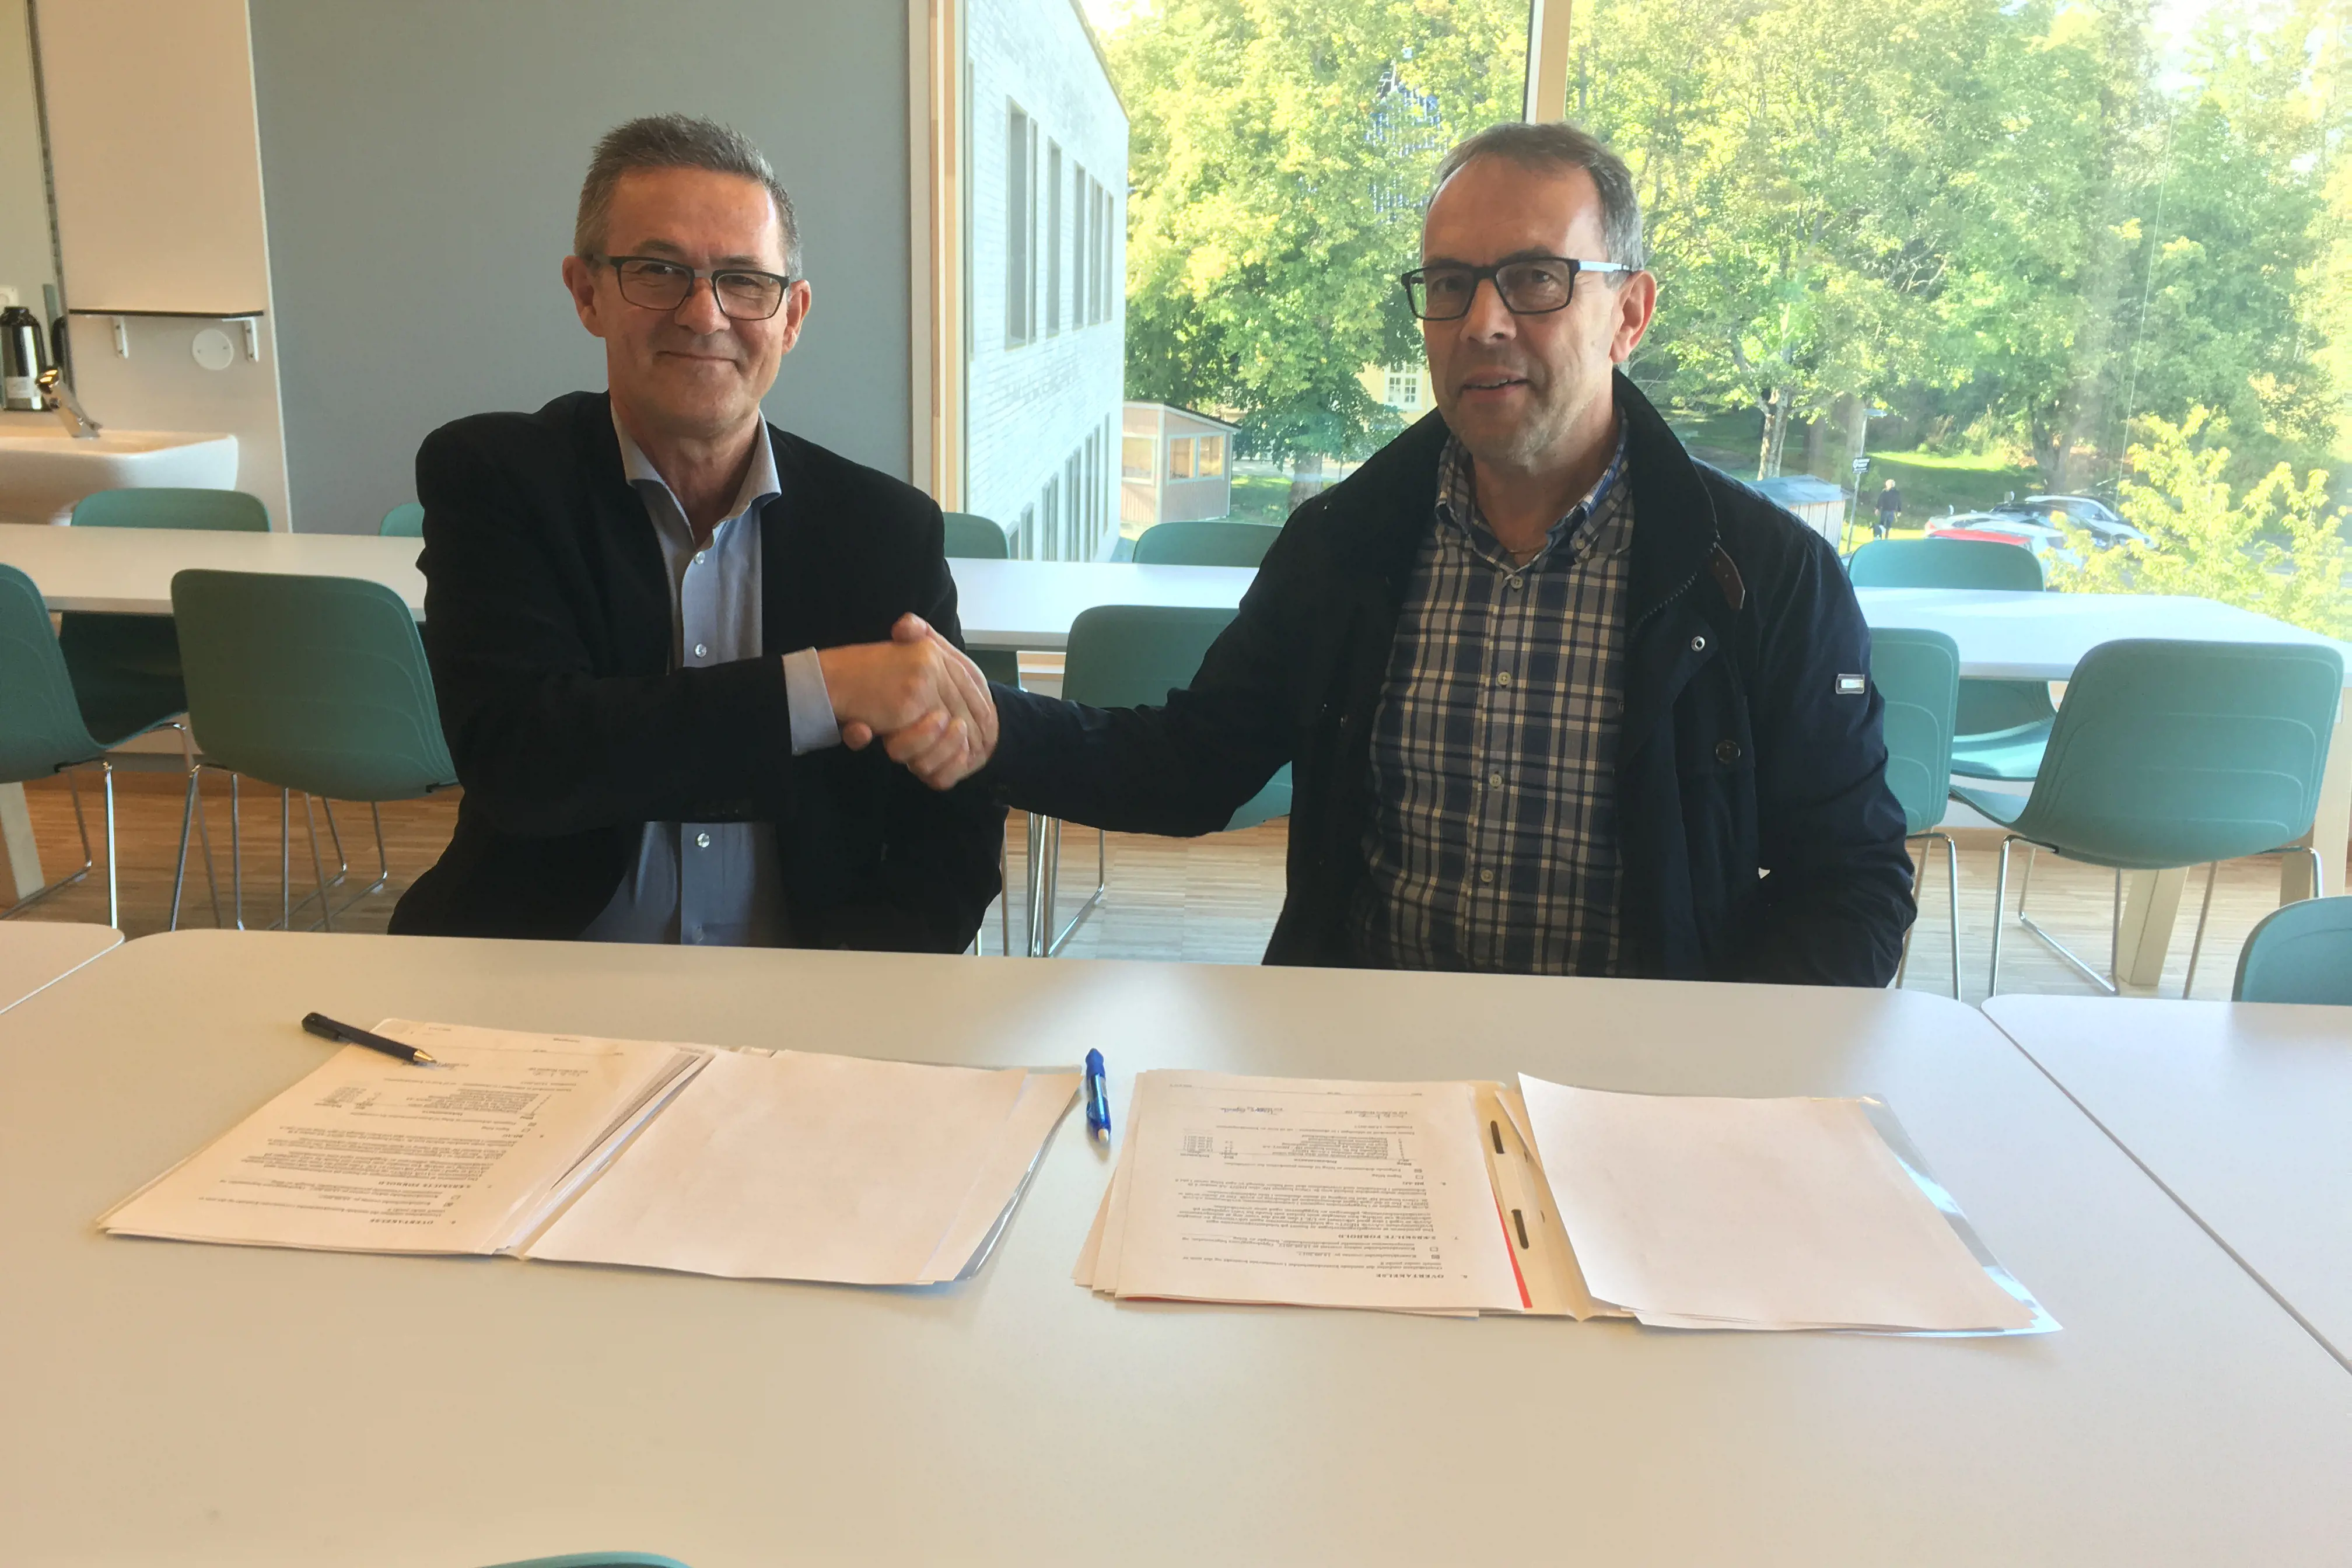 St. Olavs direktør Nils Kvernmo og Trygve Gjøvik fra HENT signerer overtakelsesprotokollen. Foto: Knut Ola Haug, Sykehusbygg